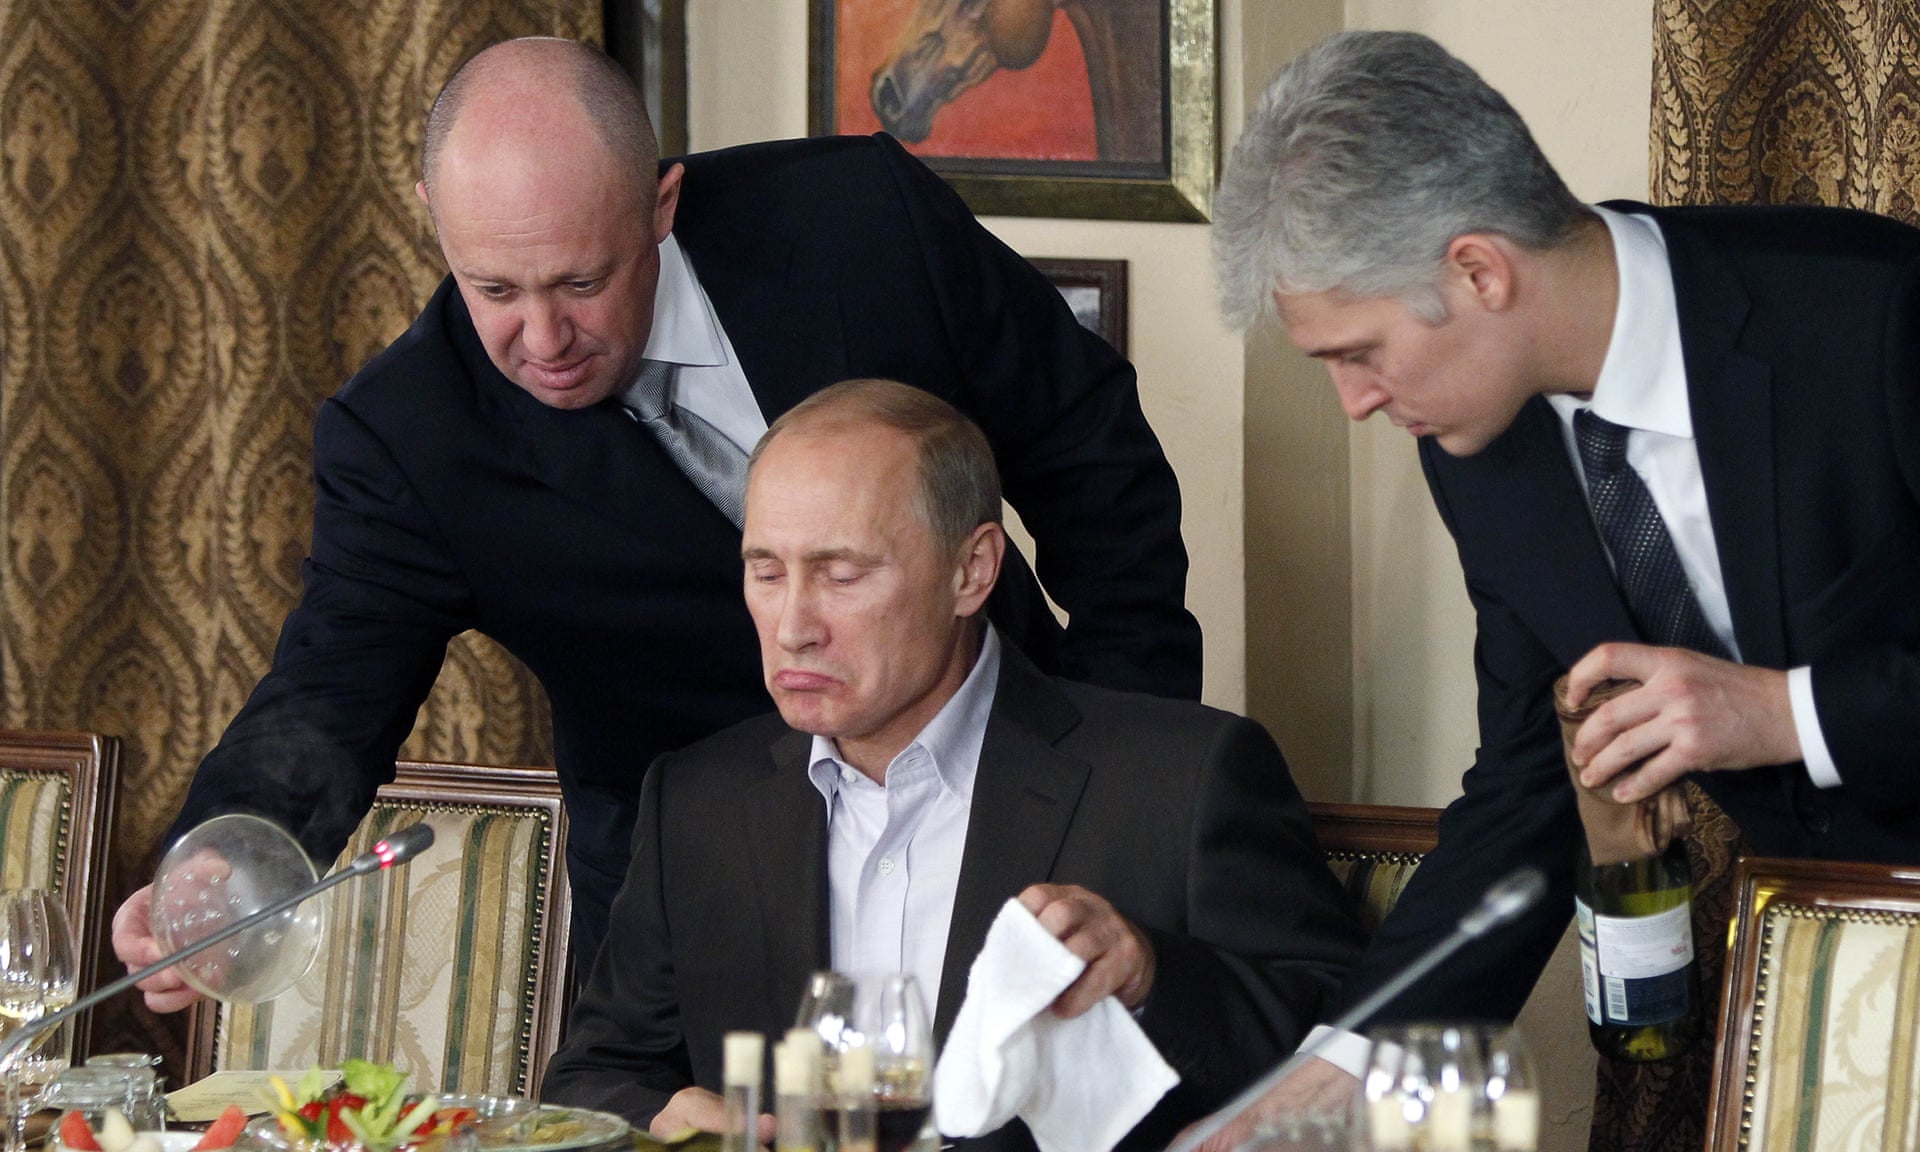 블라디미르 푸틴 러시아 대통령에게 음식 서빙을 하는 예브게니 프리고친(왼쪽). 사진은 2011년 촬영된 것이다. AP자료사진